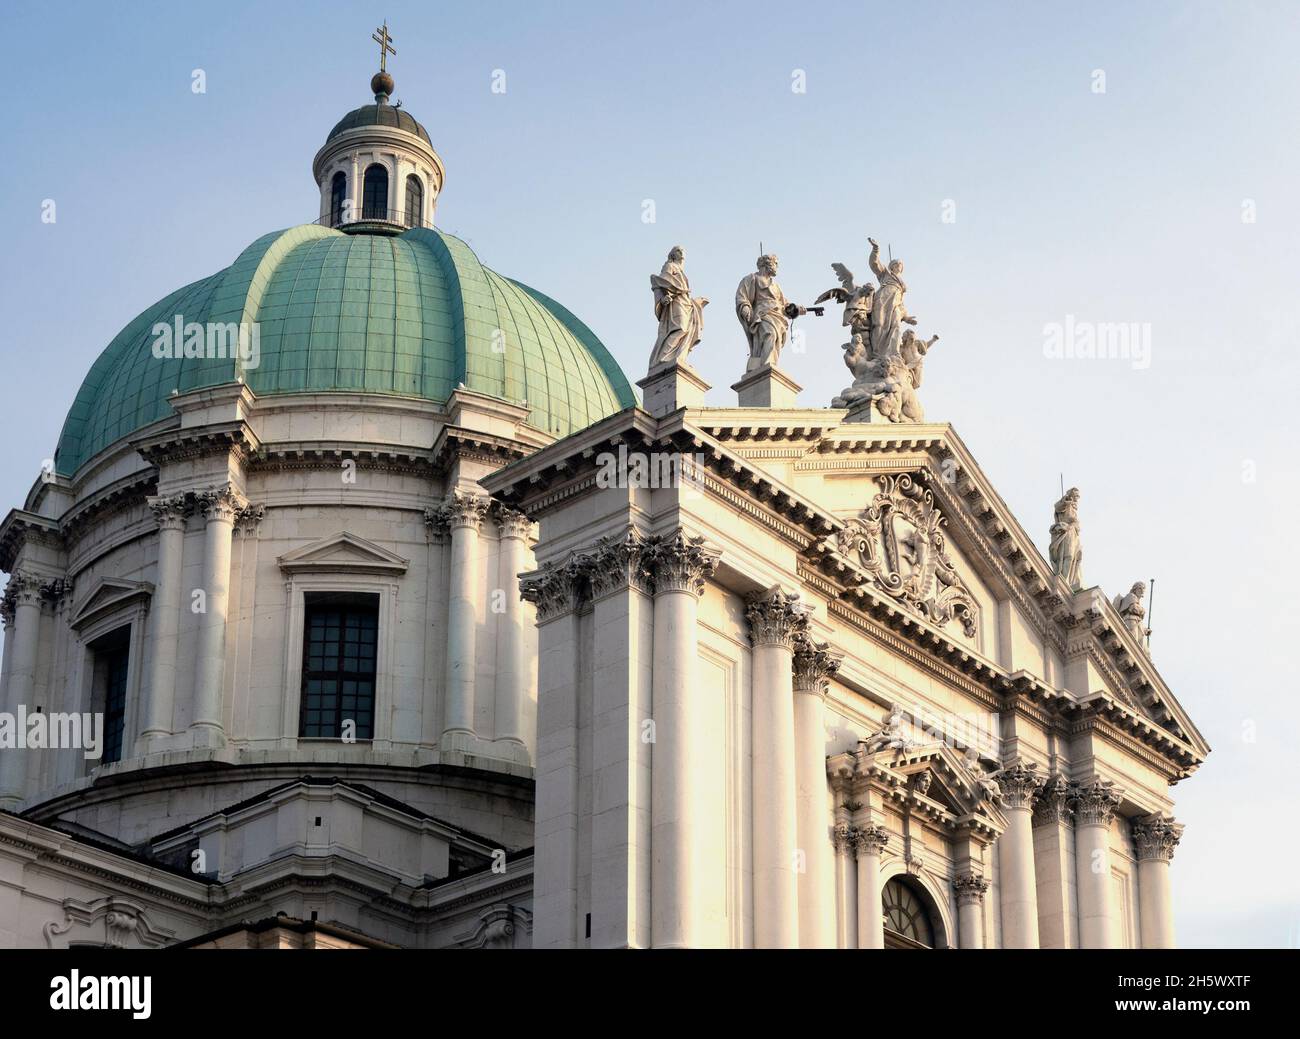 Facade and dome of Cathedral of Santa Maria Assunta; Brescia; Italy,2021. Stock Photo